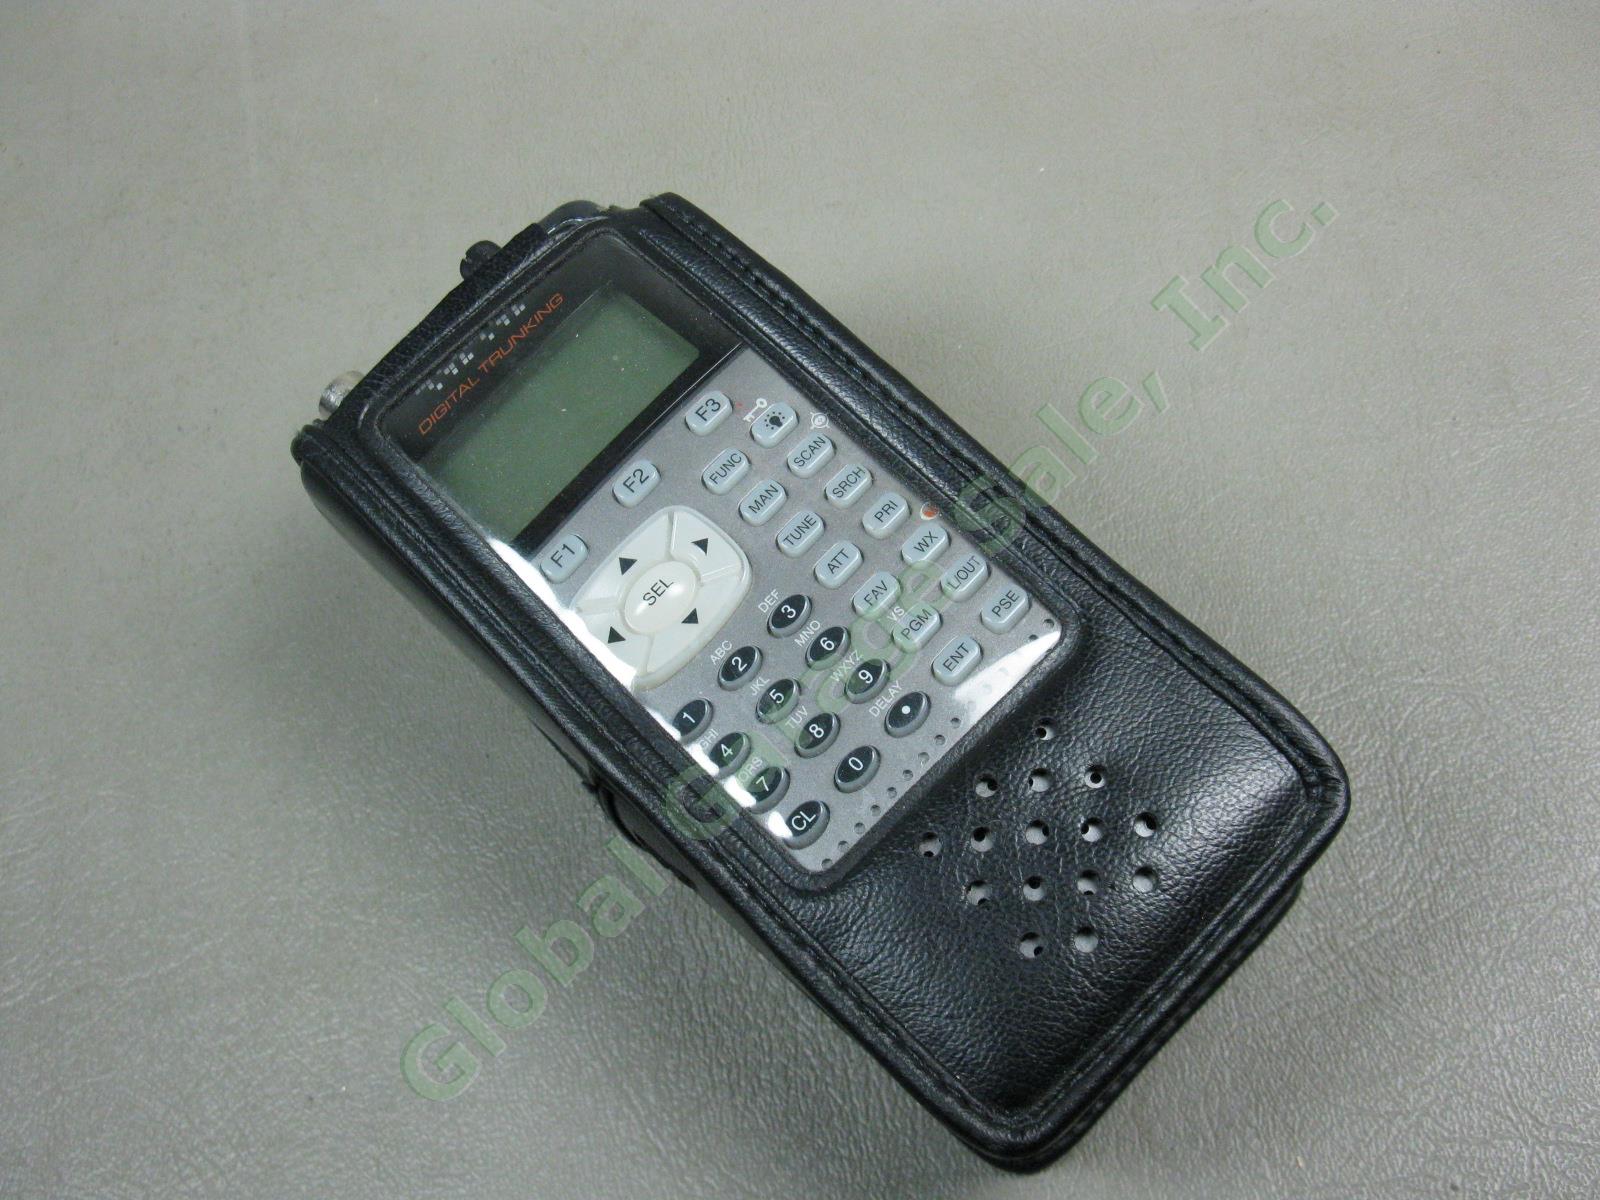 Radio Shack PRO 20 106 Digital Trunking Handheld Scanner + Antenna Manual Bundle 9